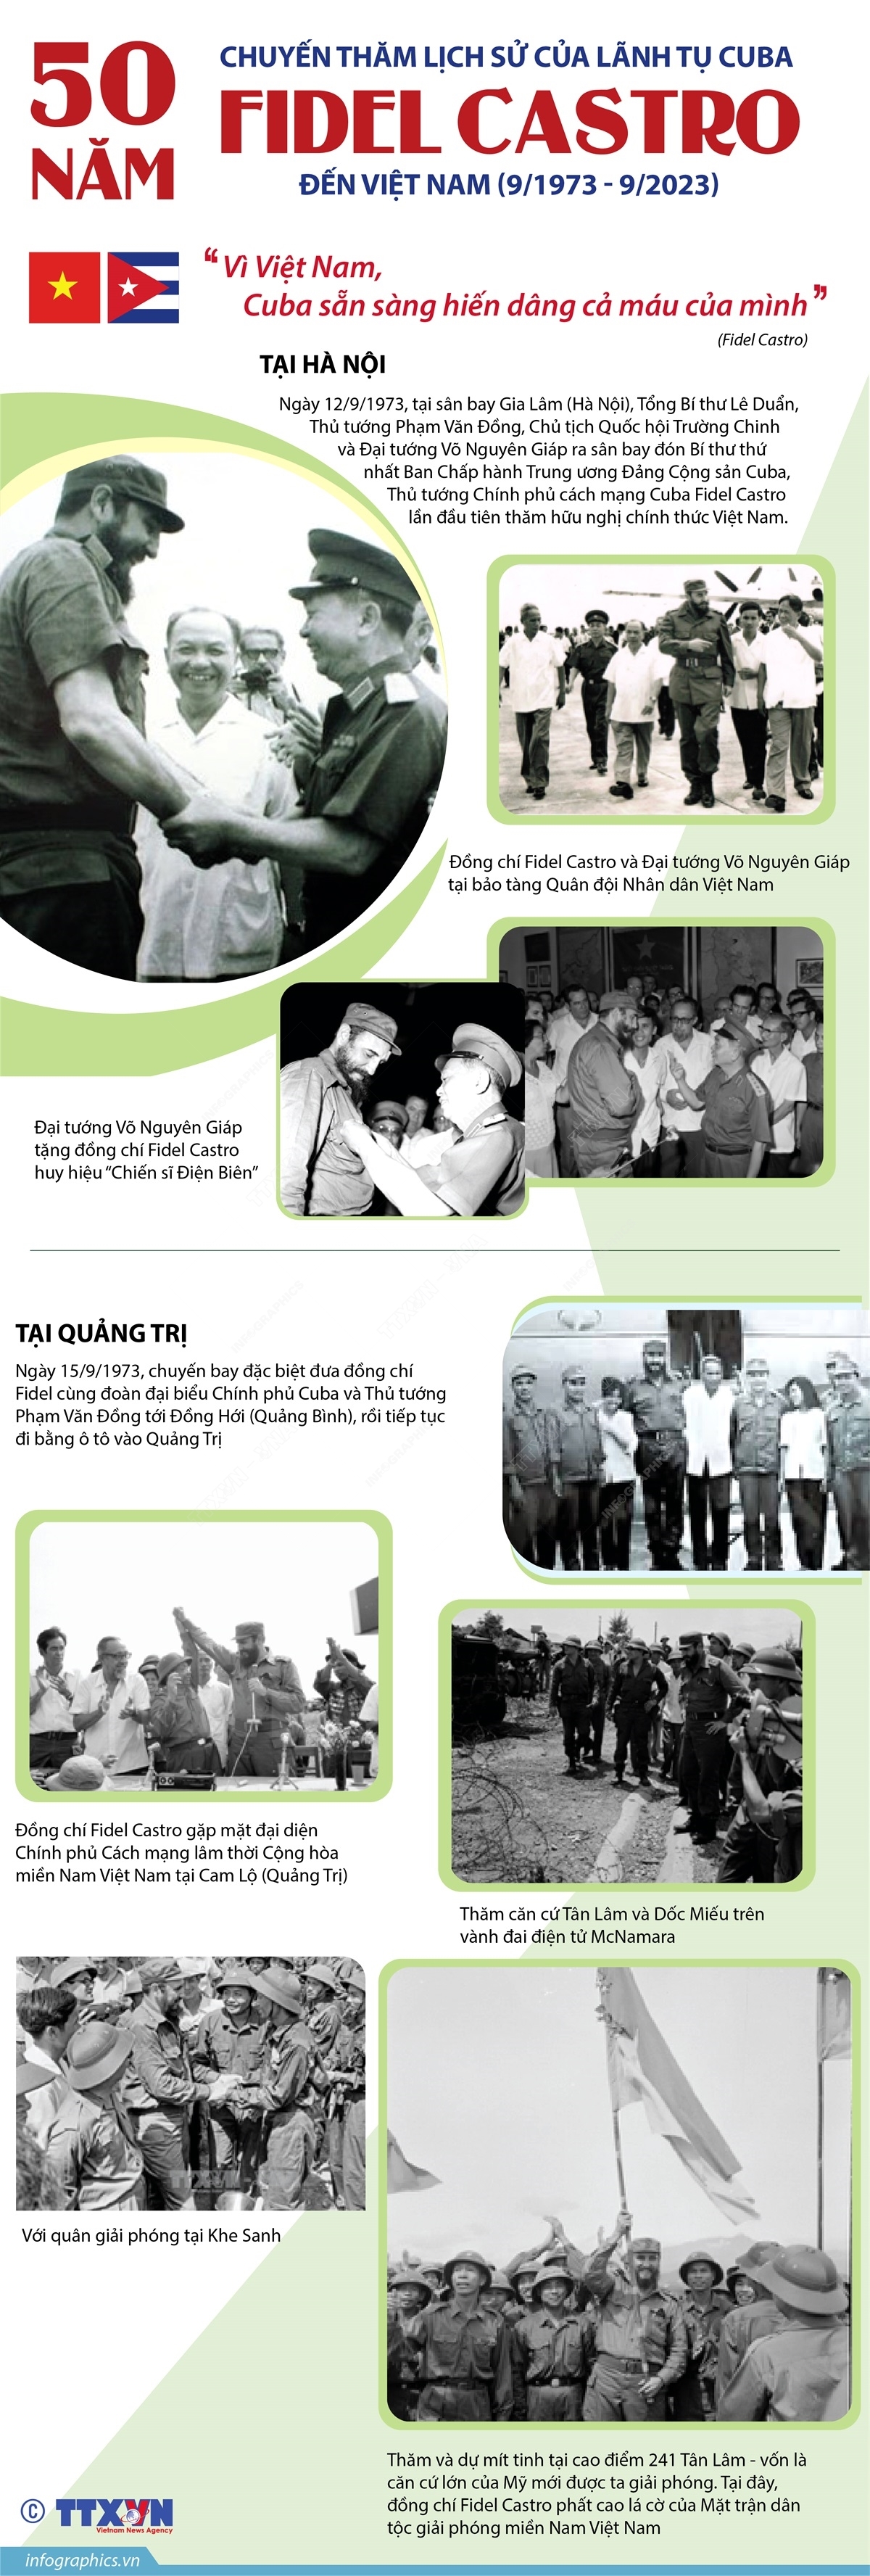 (Dẫn nguồn) 50 năm chuyến thăm lịch sử của Lãnh tụ Cuba Fidel Castro đến Việt Nam 